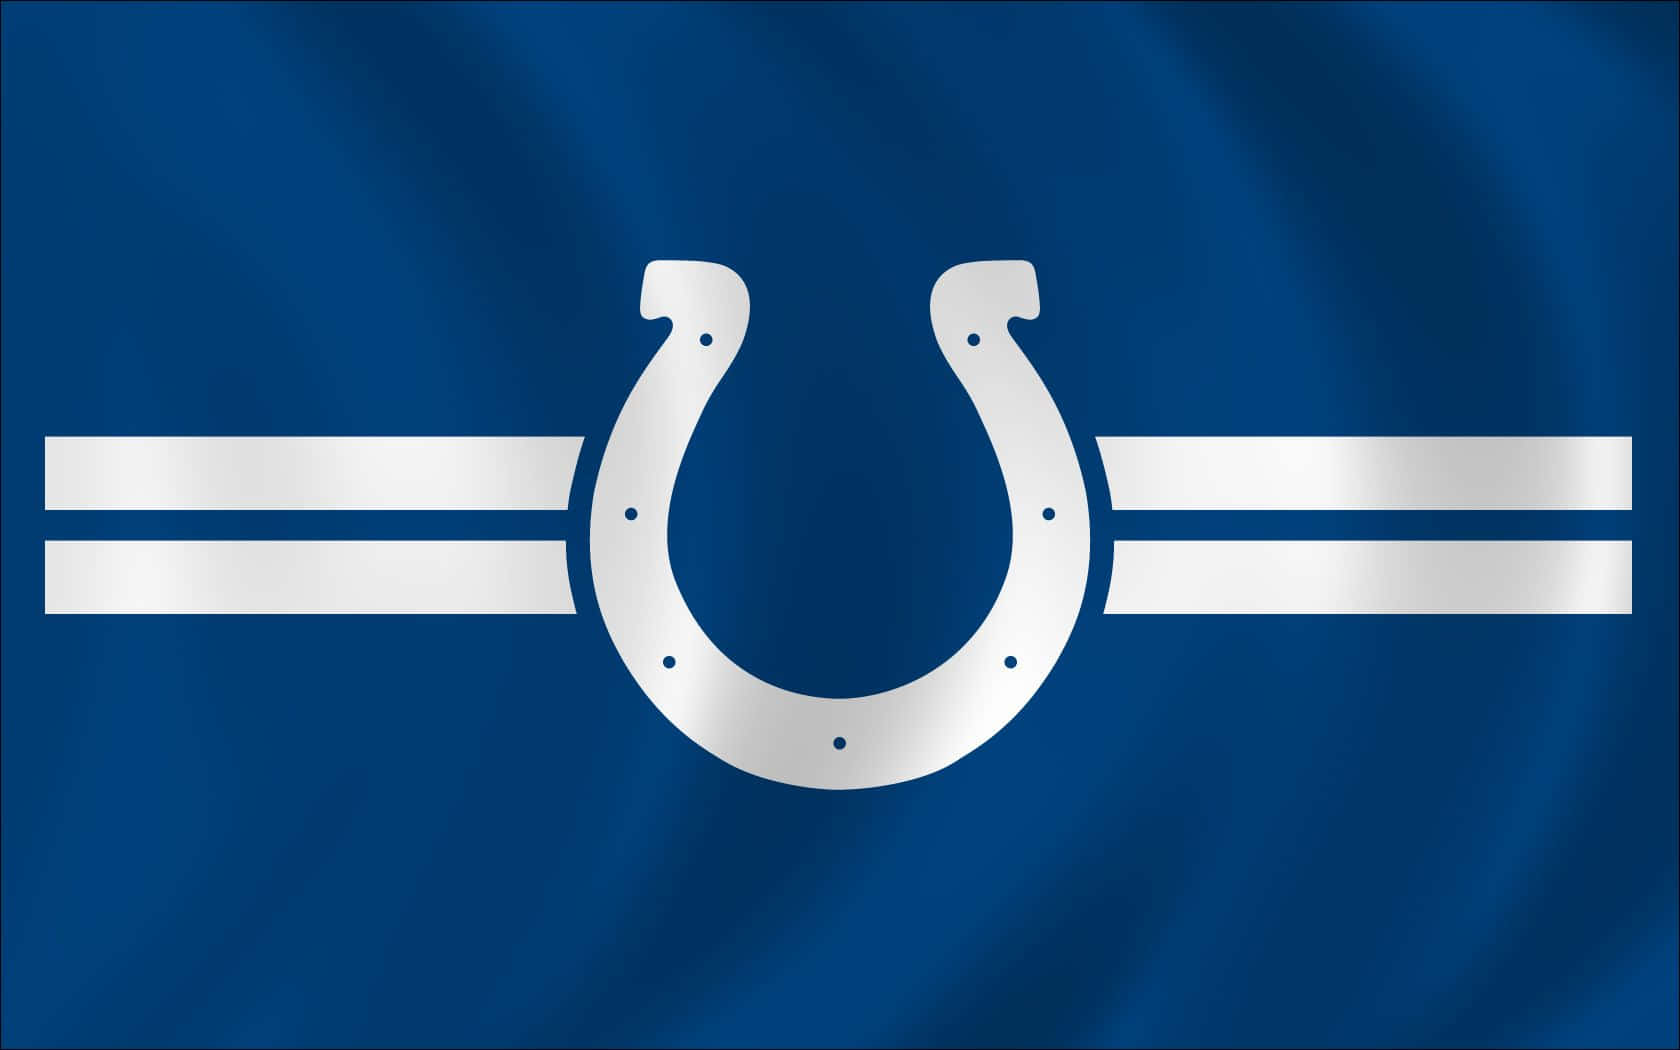 Banderadel Equipo De Fútbol Americano Colts. Fondo de pantalla